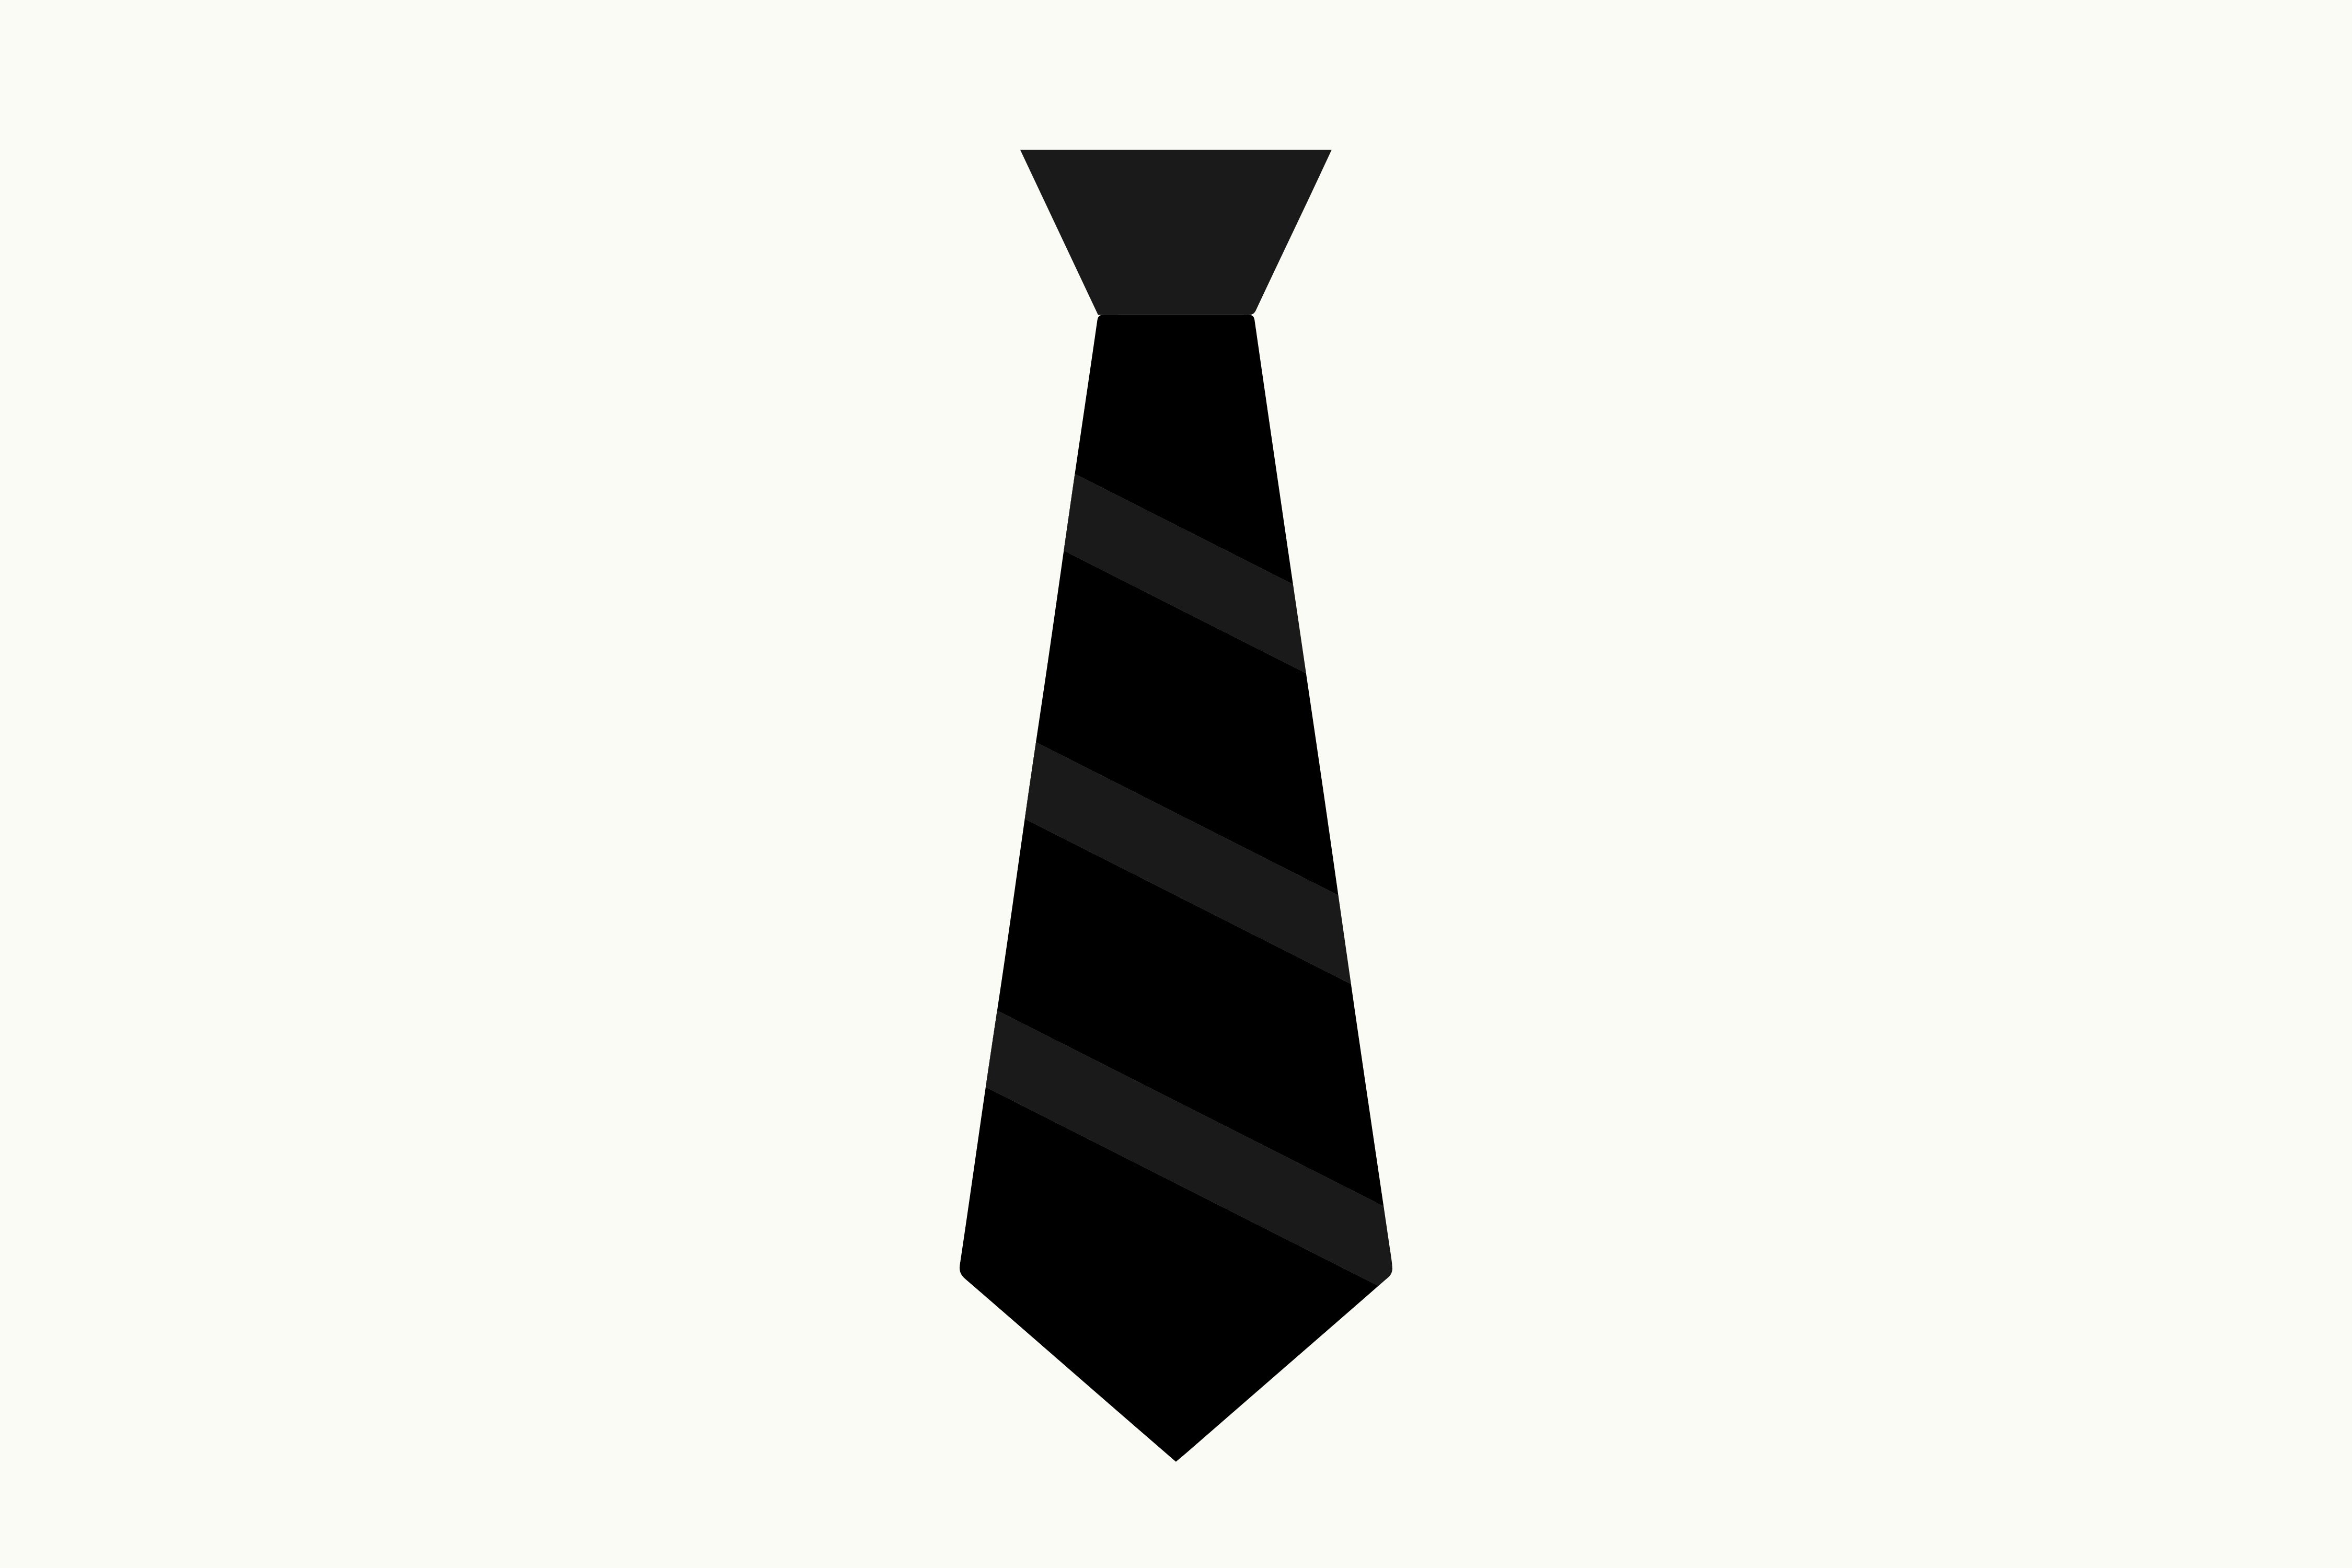 Белый галстук у черного кота 7 букв. Галстук на черном фоне. Черно белый галстук. Черный галстук. Галстук шаблон.